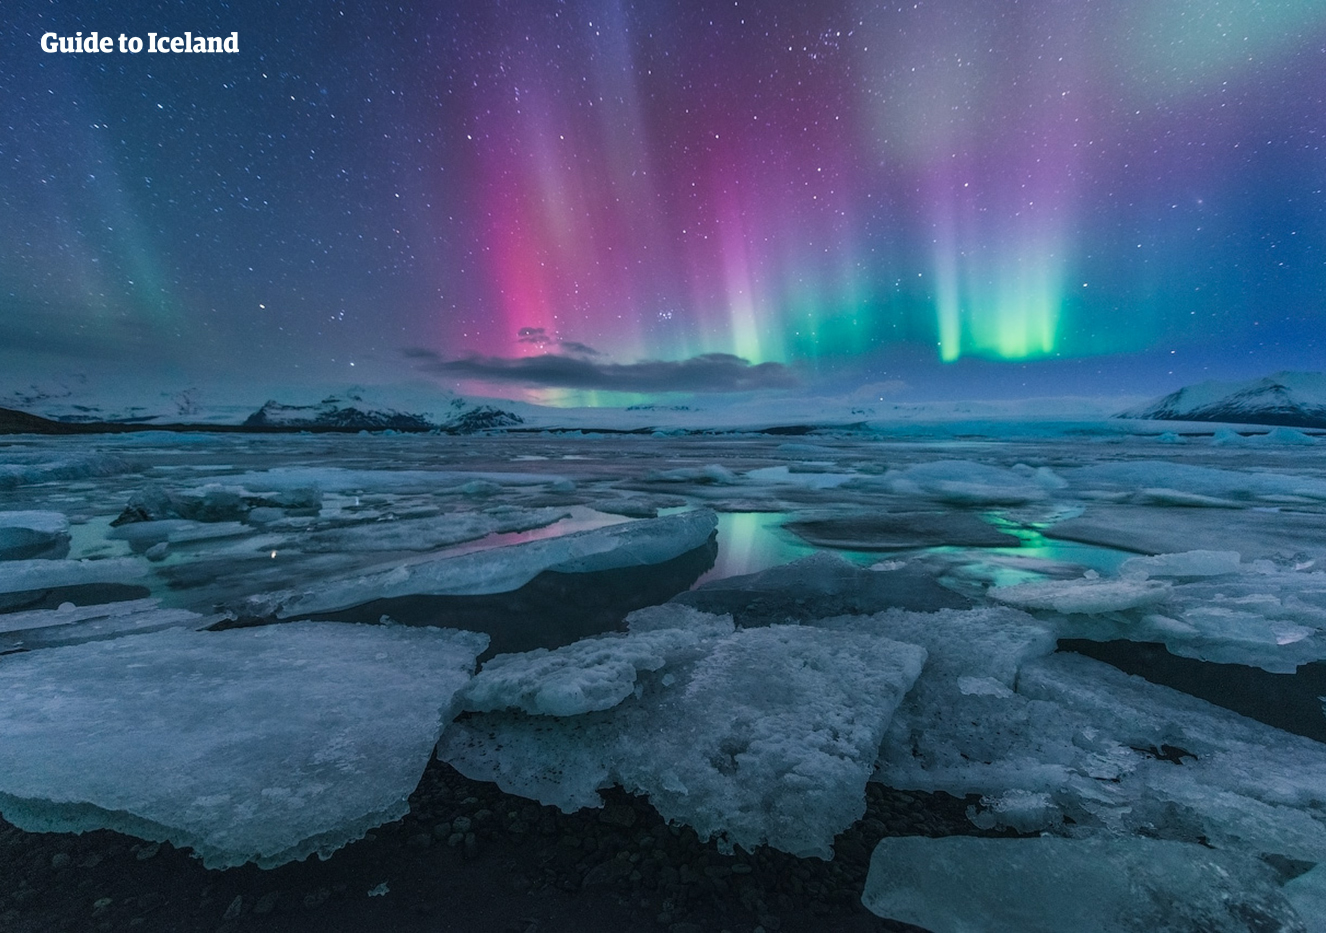 アイスランドはオーロラベルト直下だが、青や紫のオーロラが見られるのは珍しい